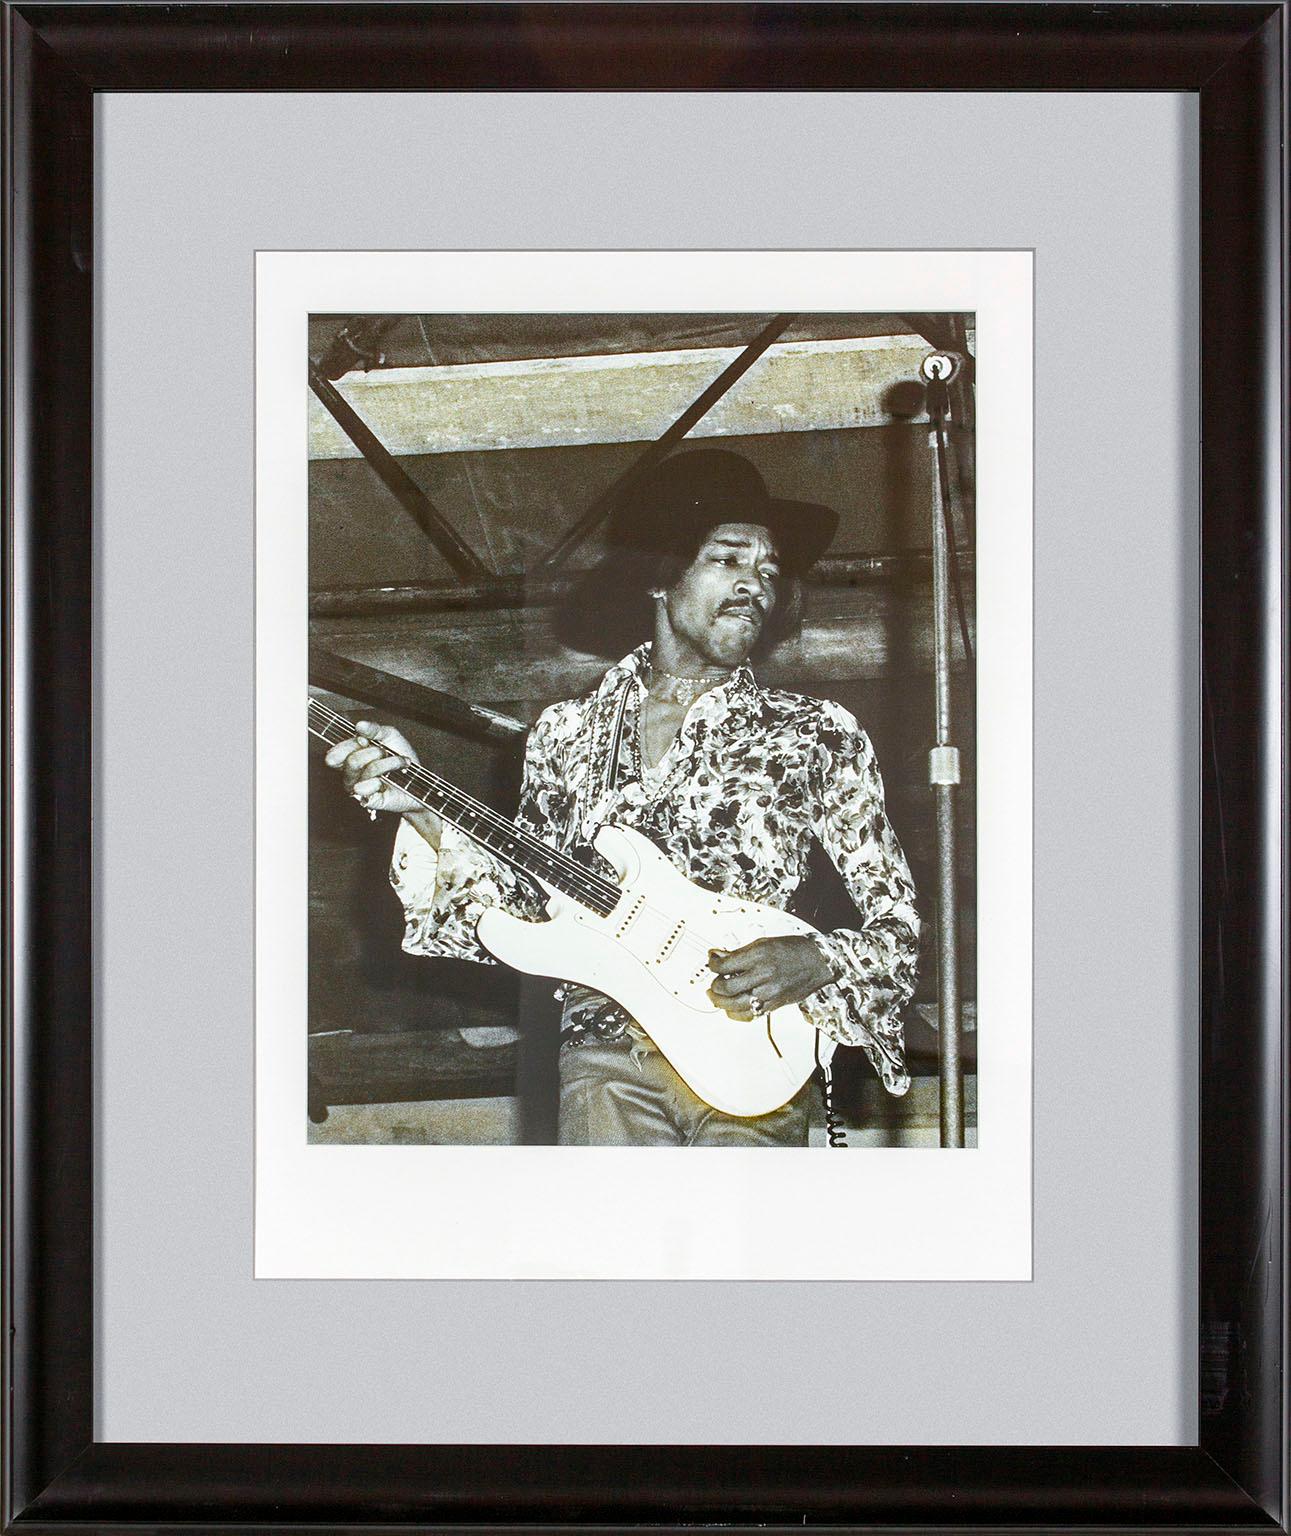 "Jimi Hendrix" photographie encadrée en noir et blanc de Michael Putland représentant Jimi Hendrix lors du festival de musique de Woburn en Angleterre le 6 juillet 1968.  Taille de l'image : 19 1/2 x 15 1/4 pouces. Cette photo a été exposée dans une